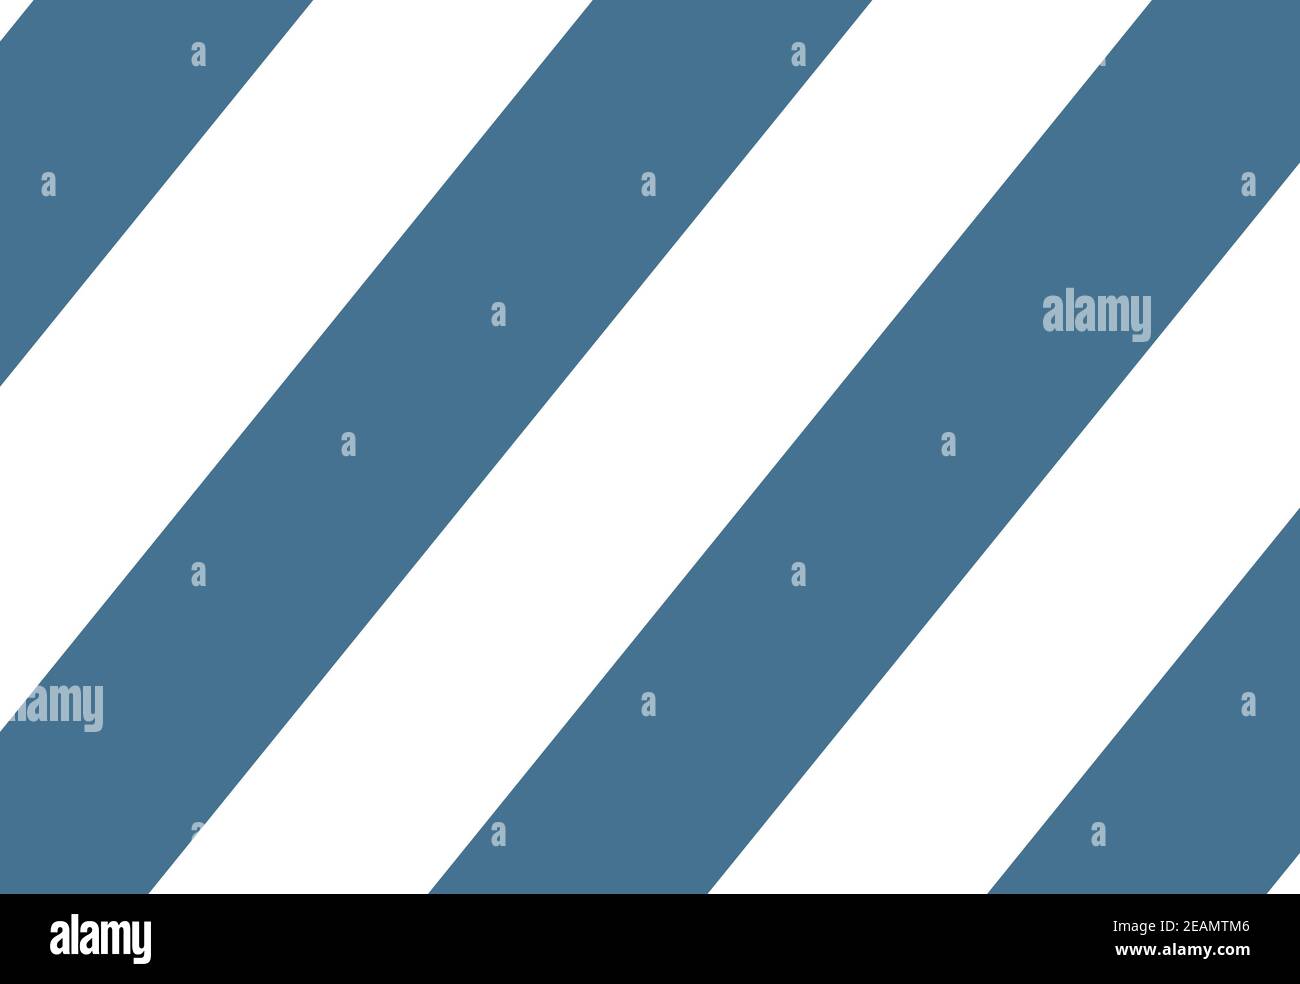 Blue and white diagonal stripes background Stock Photo